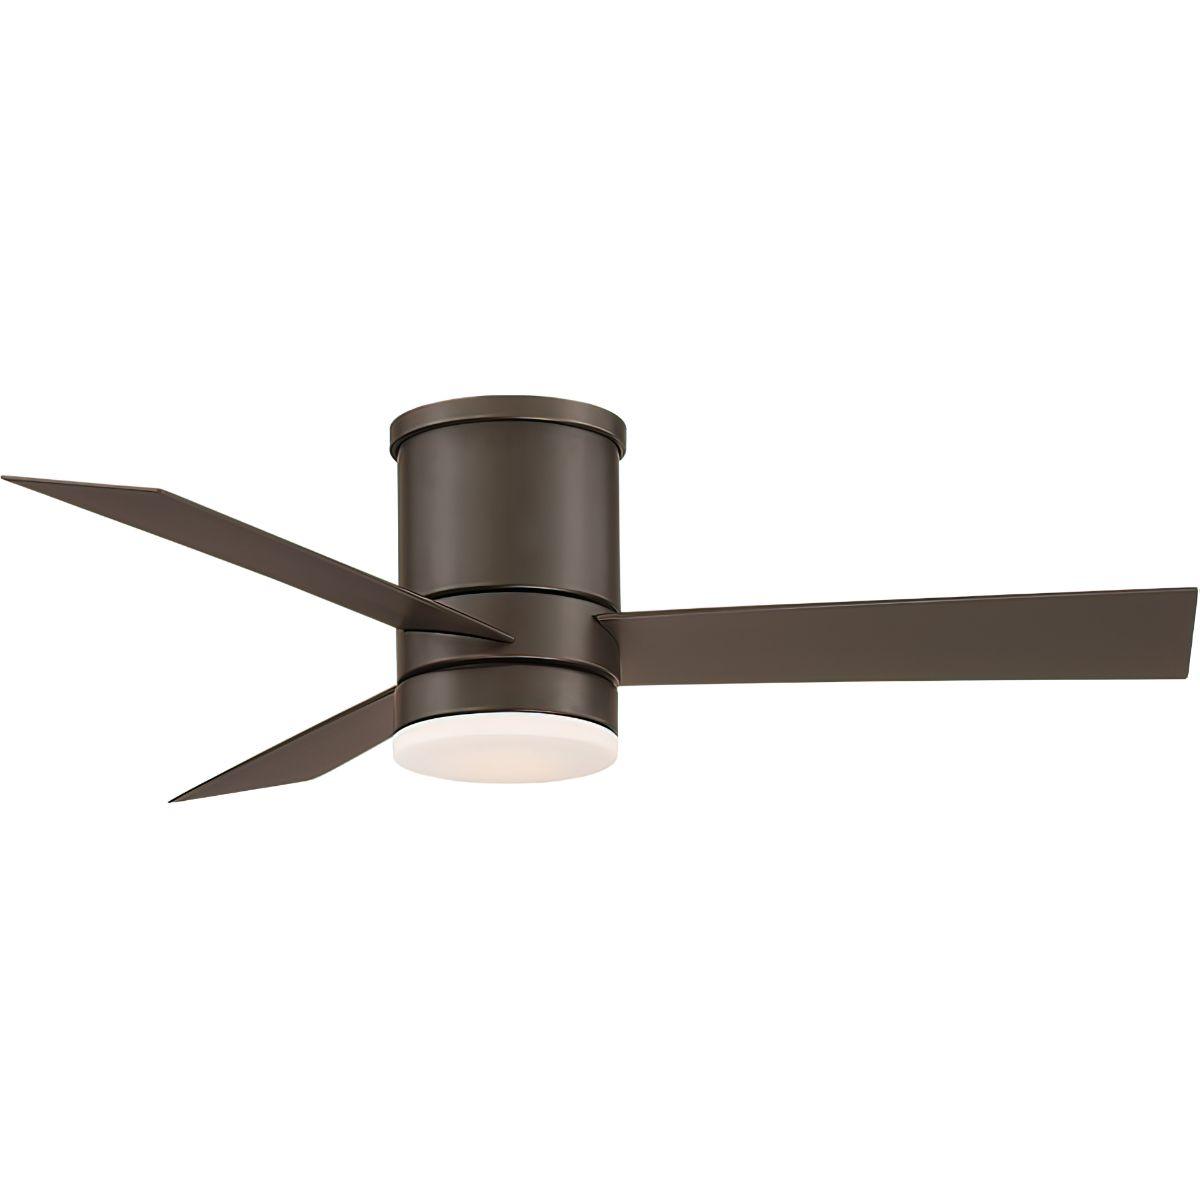 Low Profile Outdoor Smart Ceiling Fan